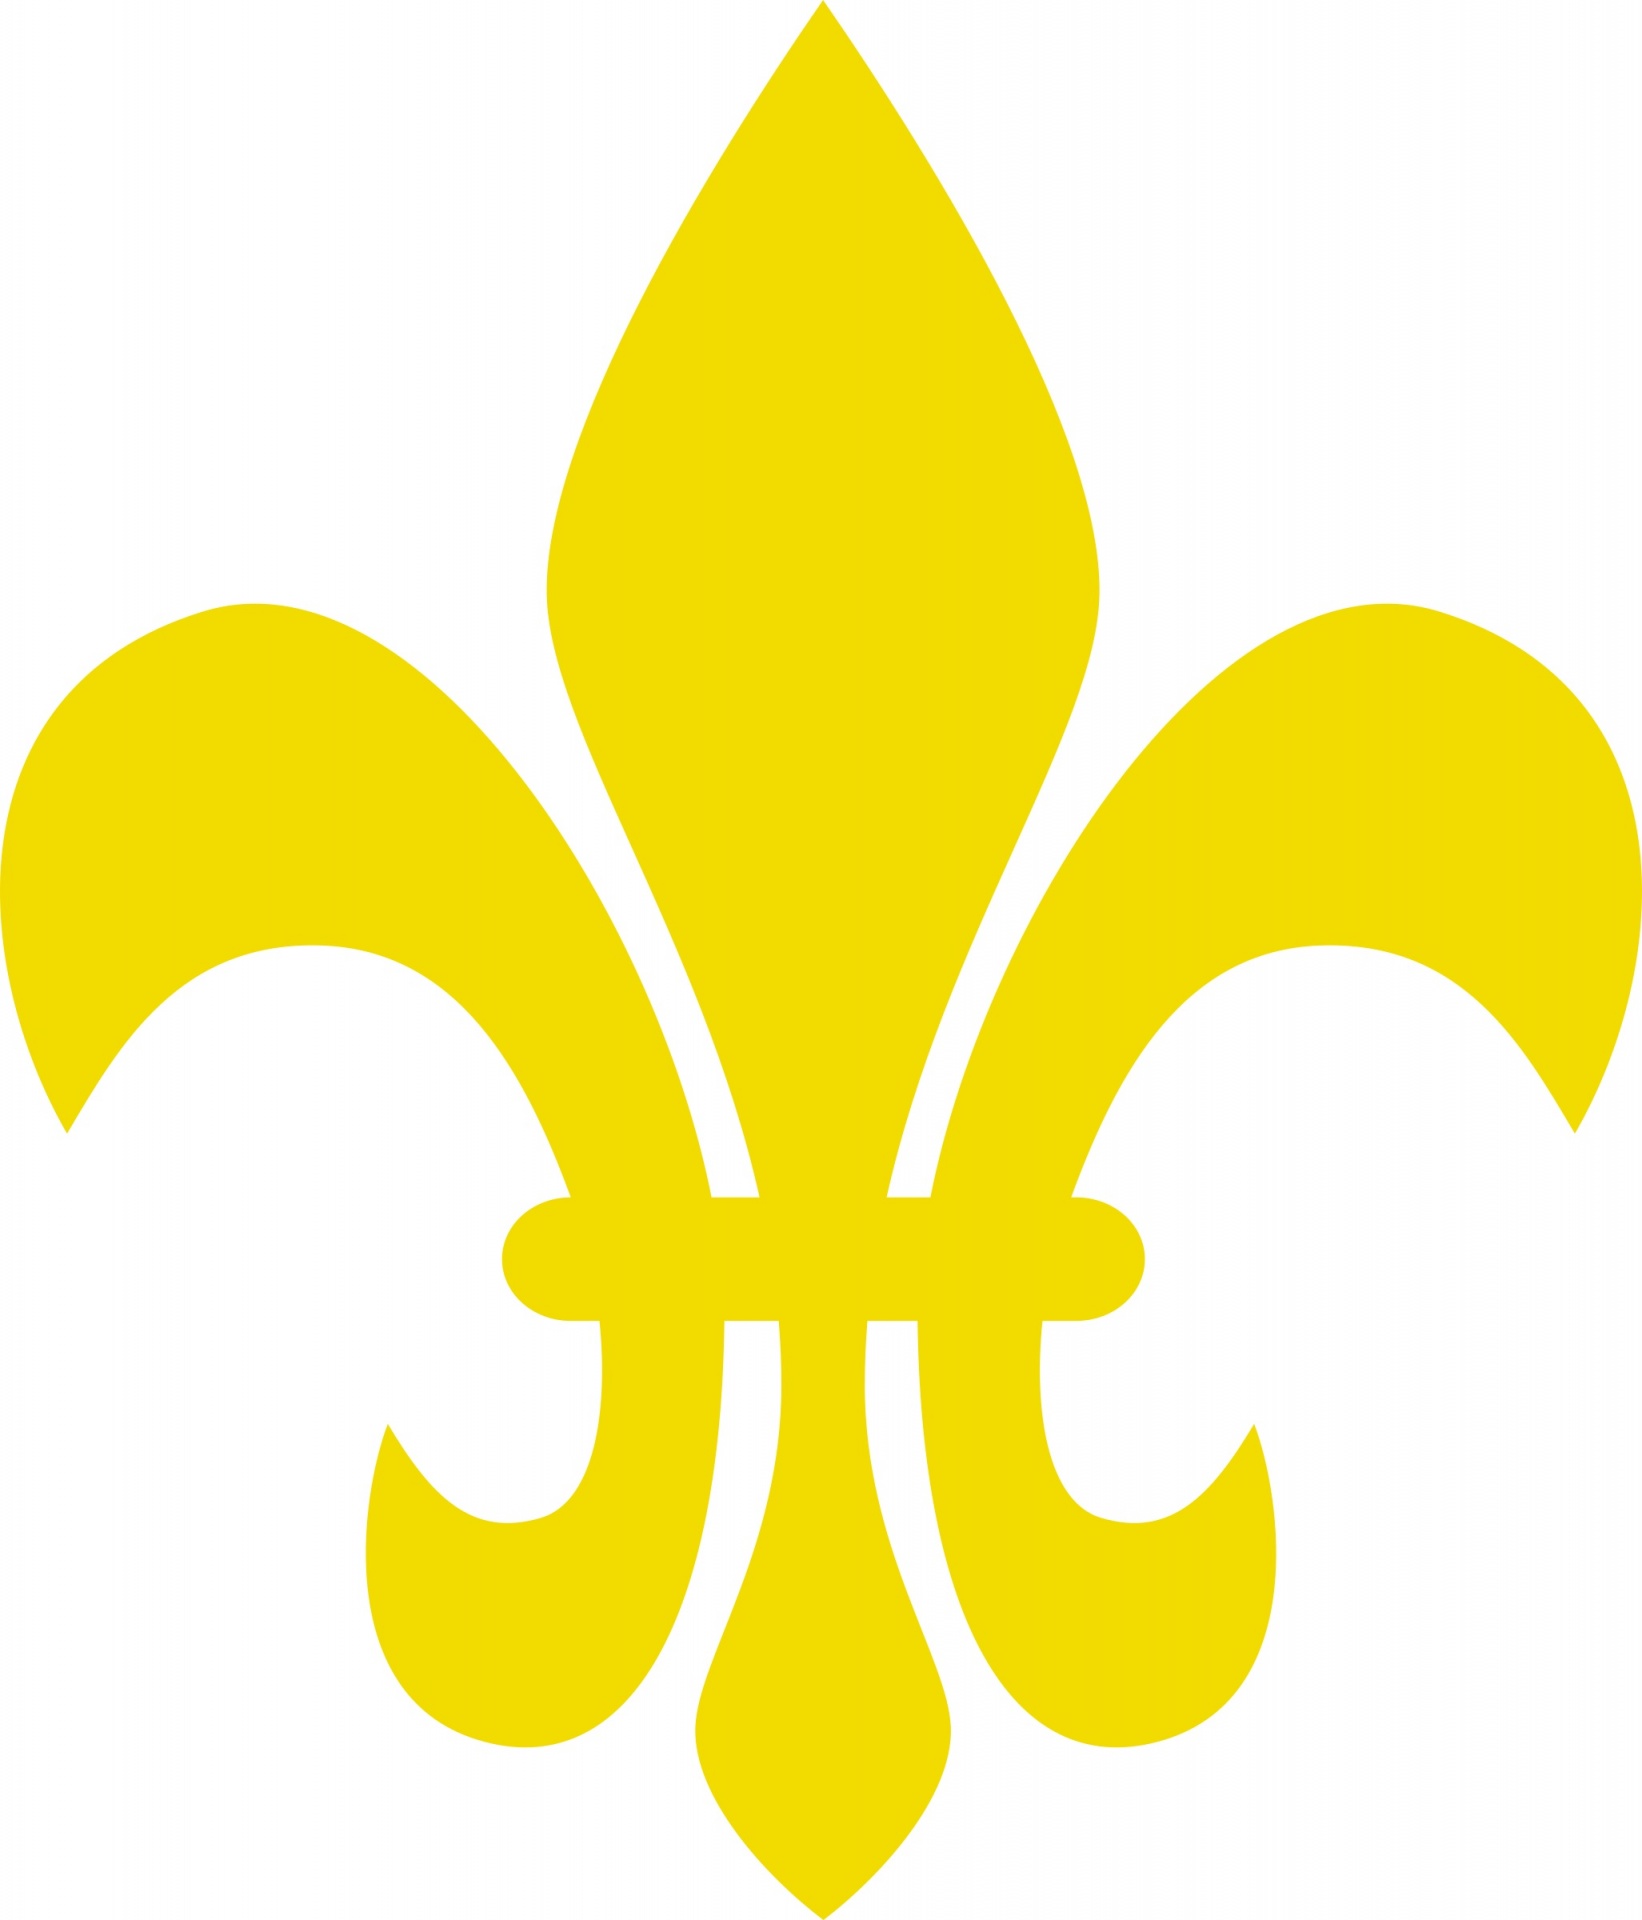 Fleur De Lis - Golden fleur de lis, symbol of French royalty